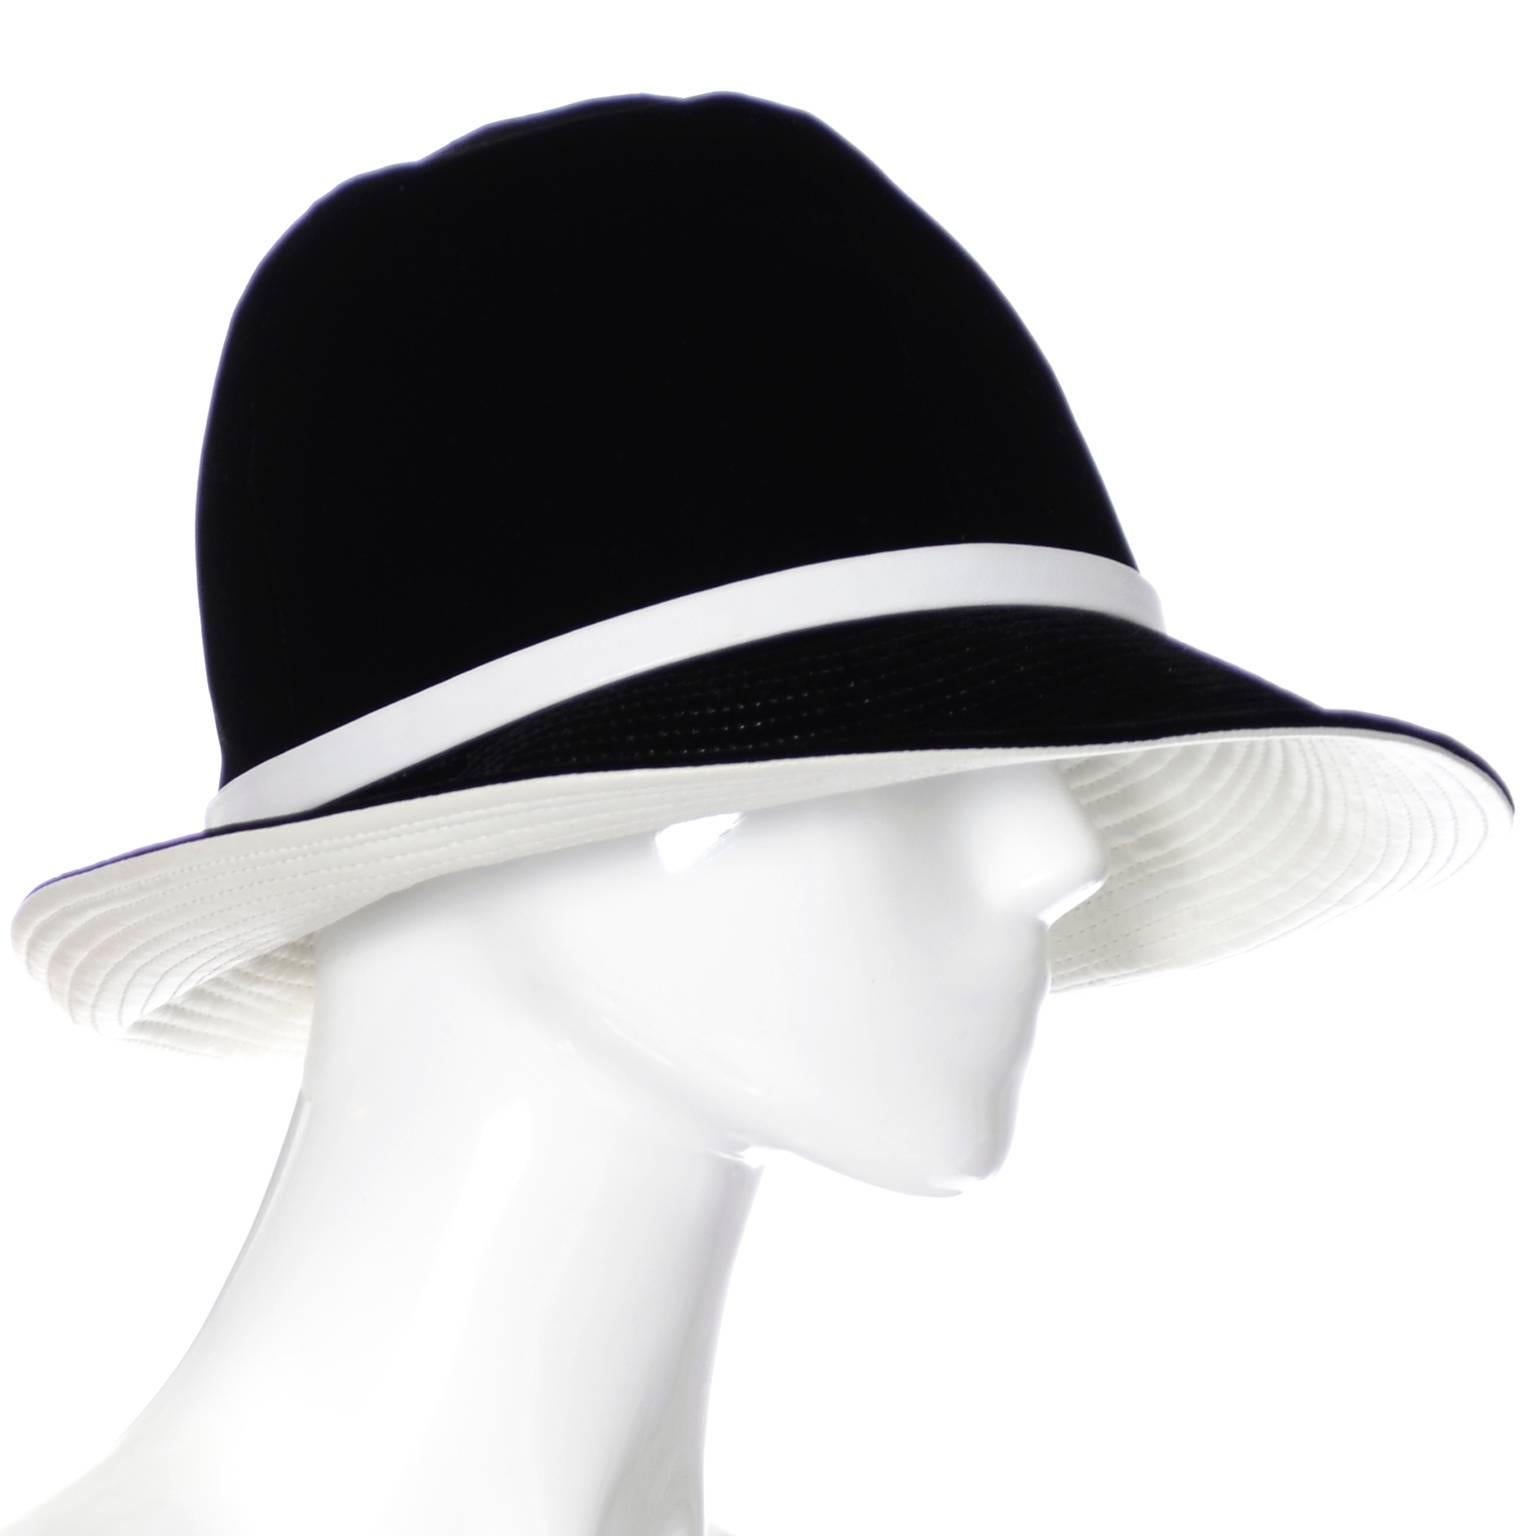 Il s'agit d'un superbe chapeau vintage des années 60 du merveilleux John Harberger, ou Mr. Ce chapeau a été acheté chez I+I Whiting et est fait de velours noir à l'extérieur, avec une belle garniture en cuir blanc et une doublure sur le bord du